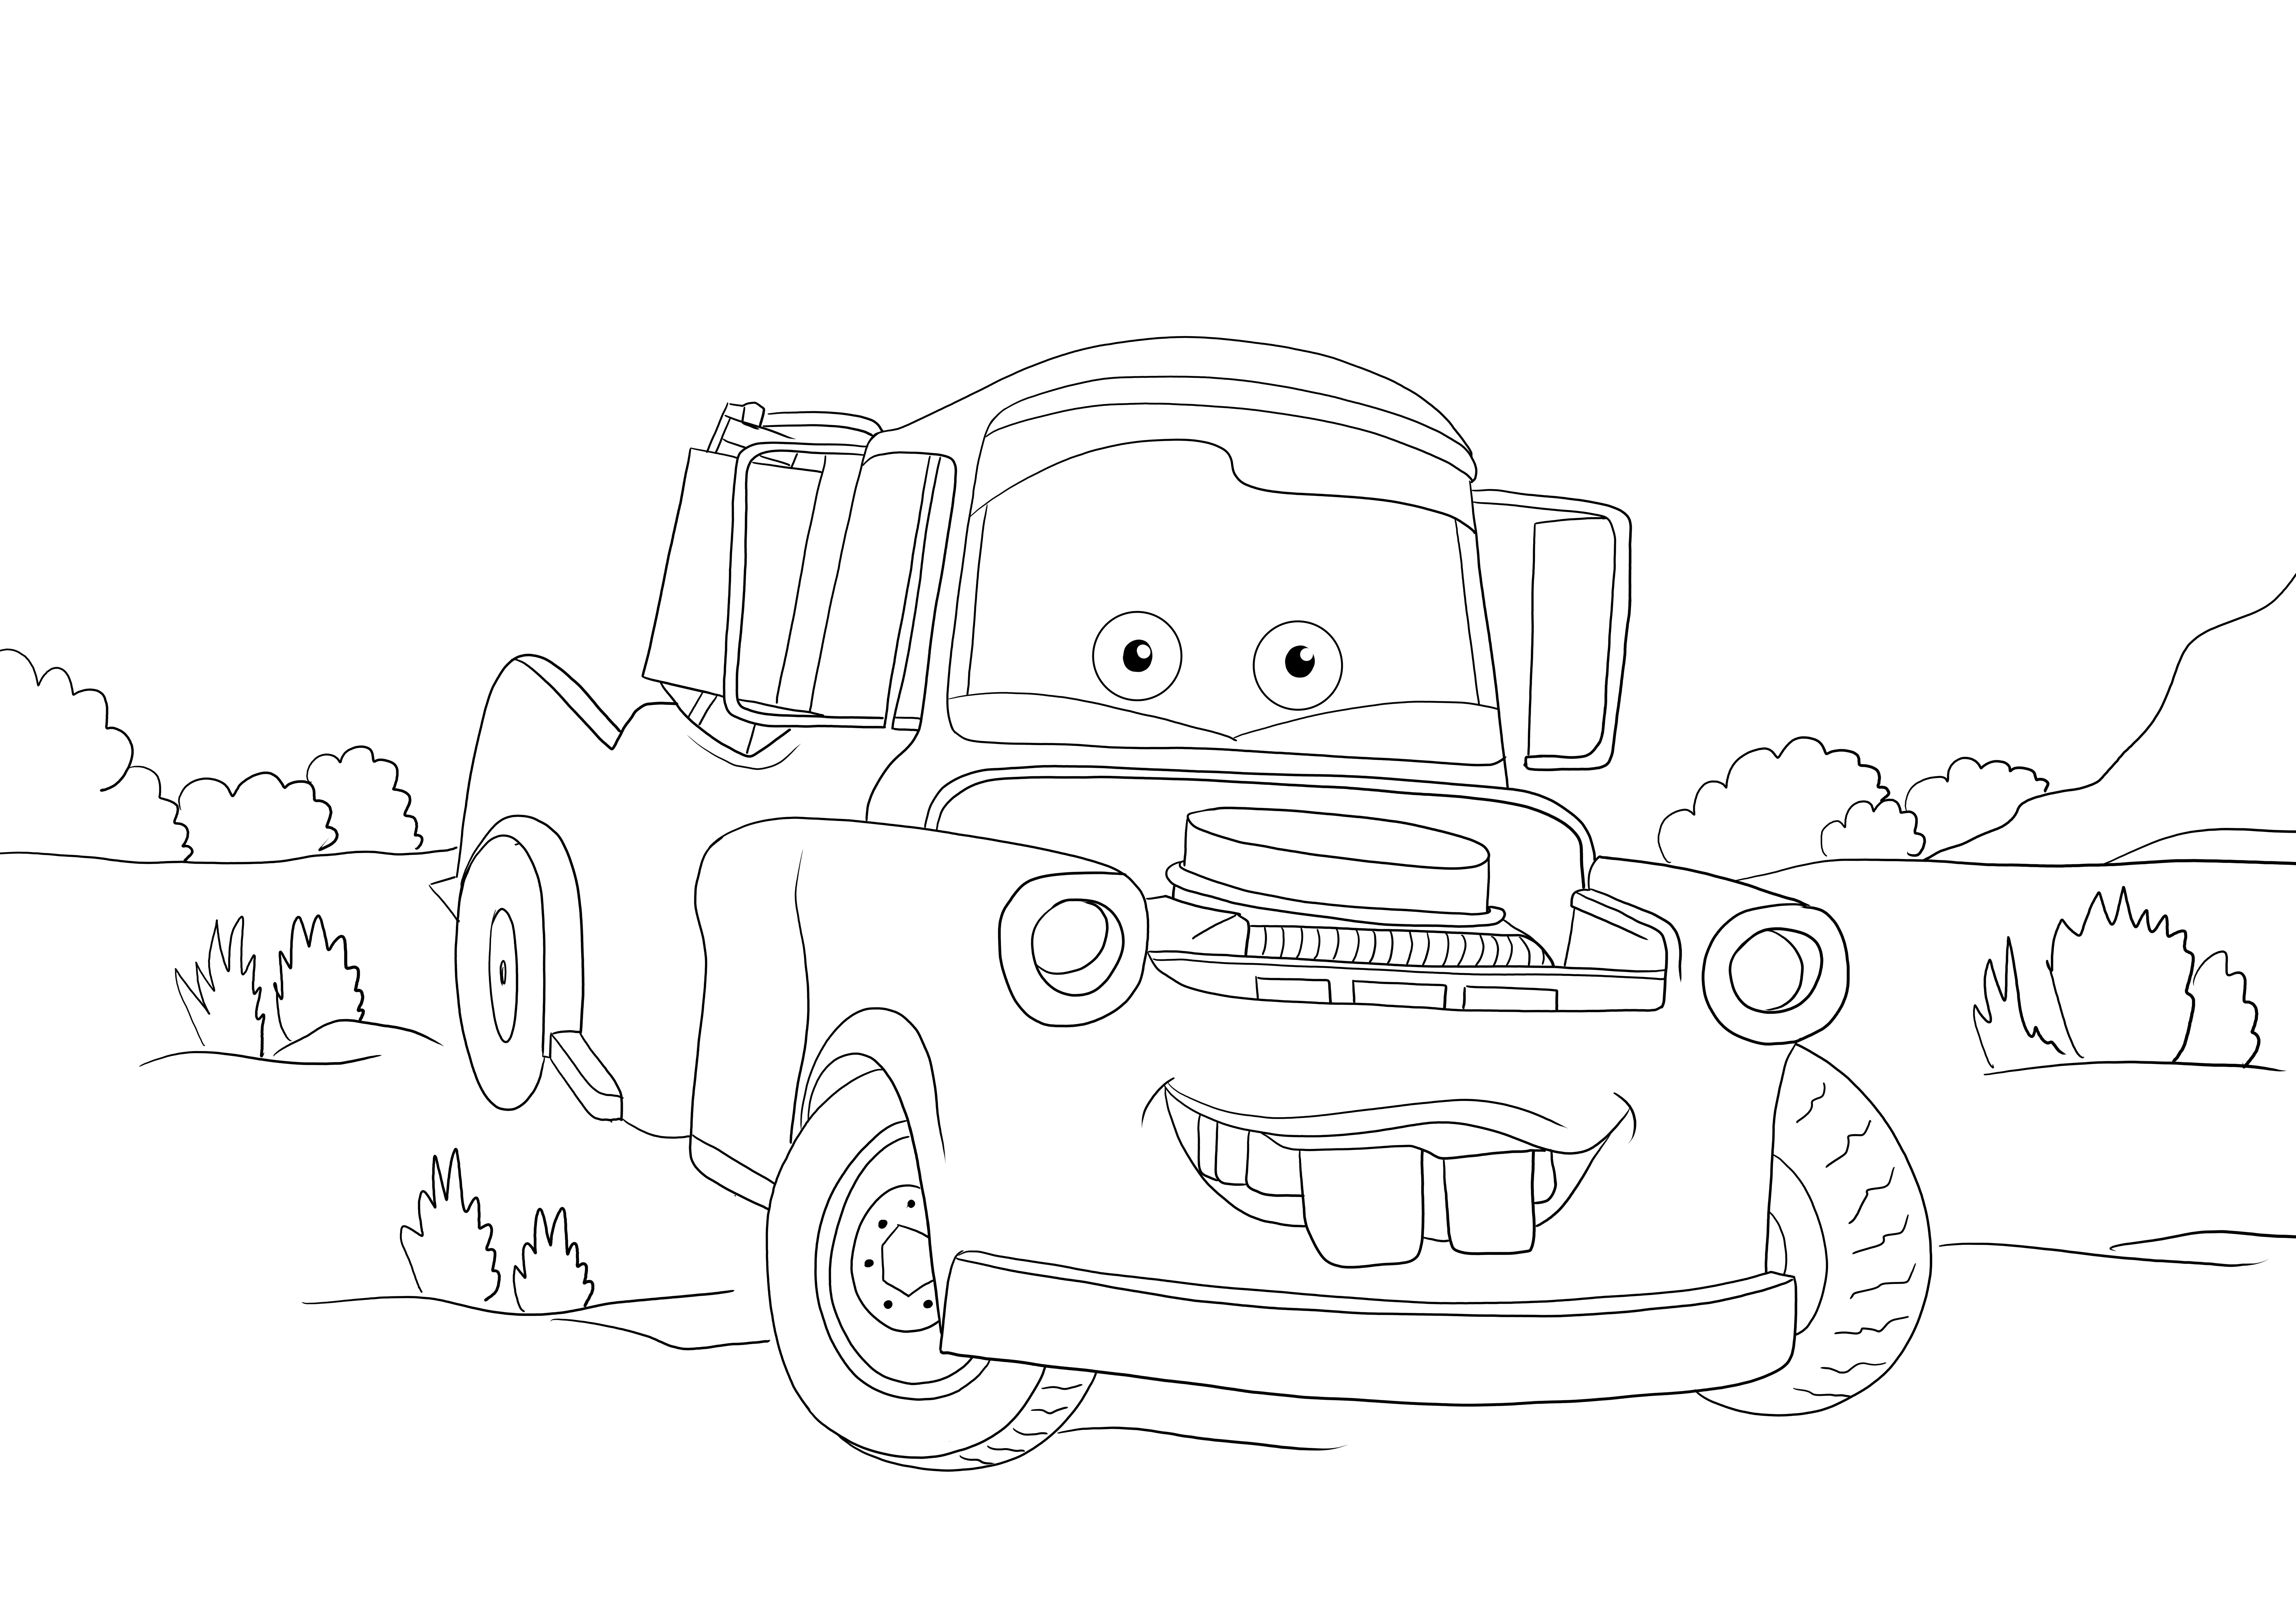 Tow mater from Cars 3 image attend d'être colorée car elle est gratuite à imprimer ou à télécharger